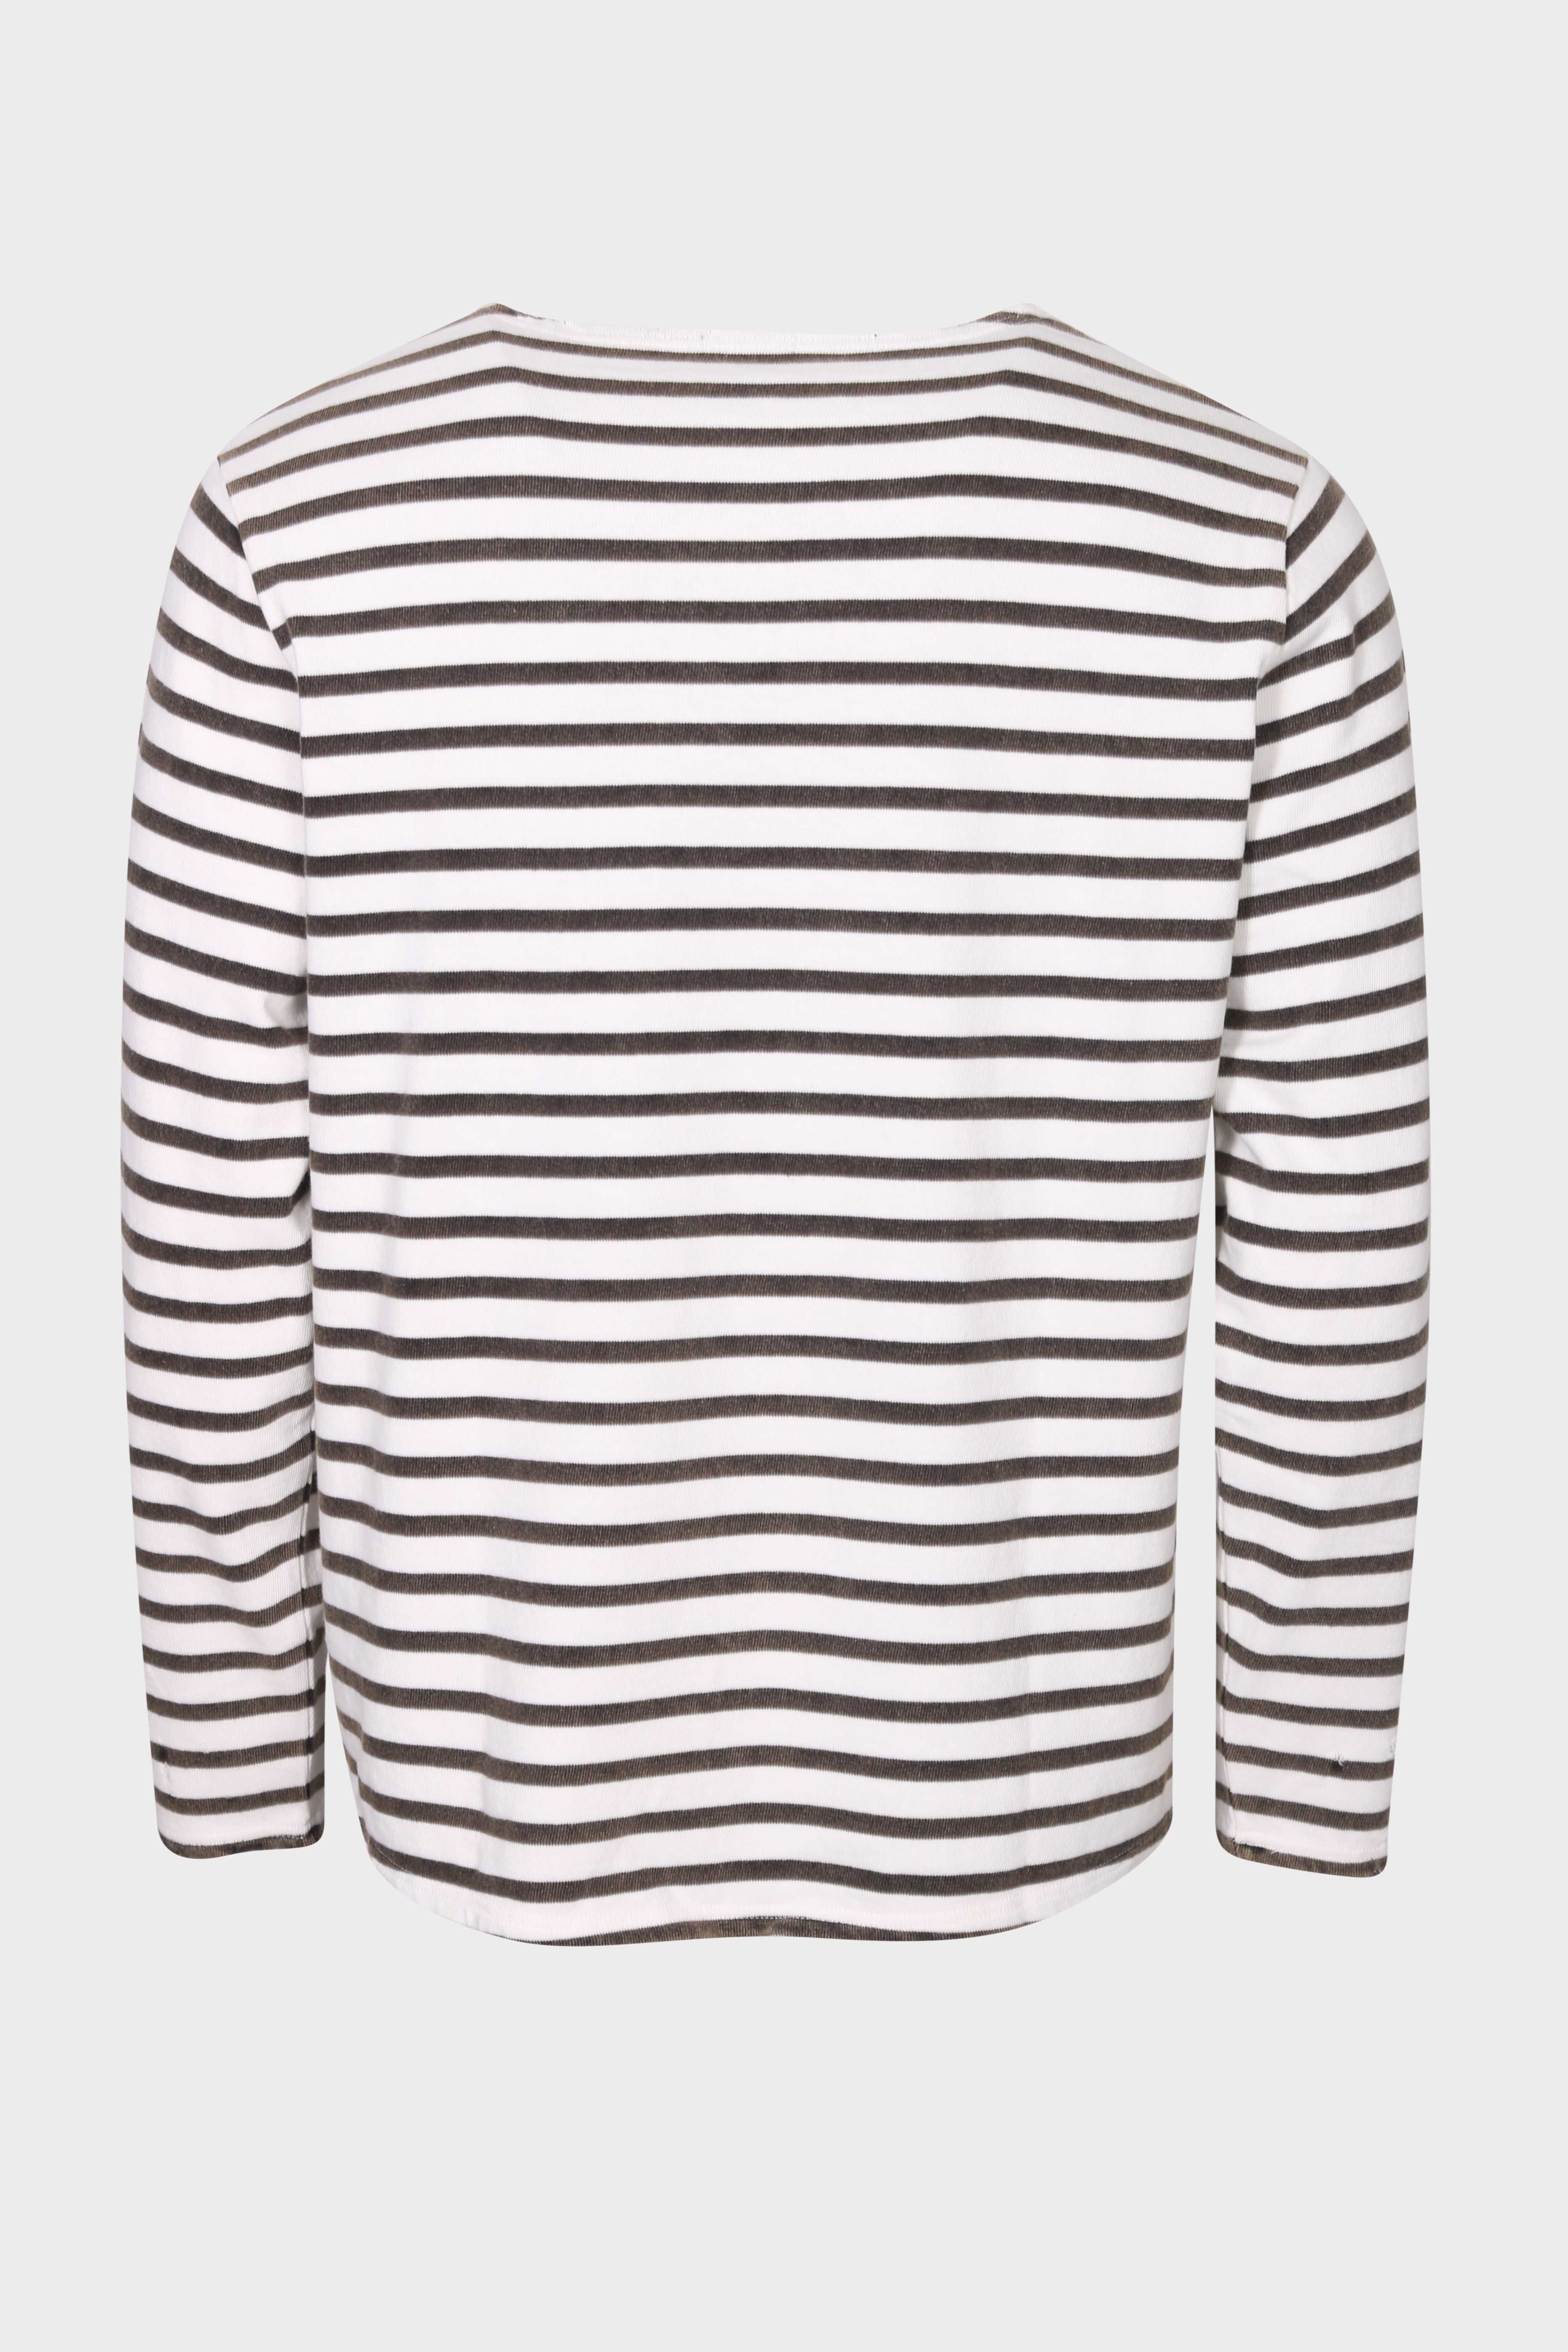 R13 Breton Sweater in Black/Ecru Stripe L